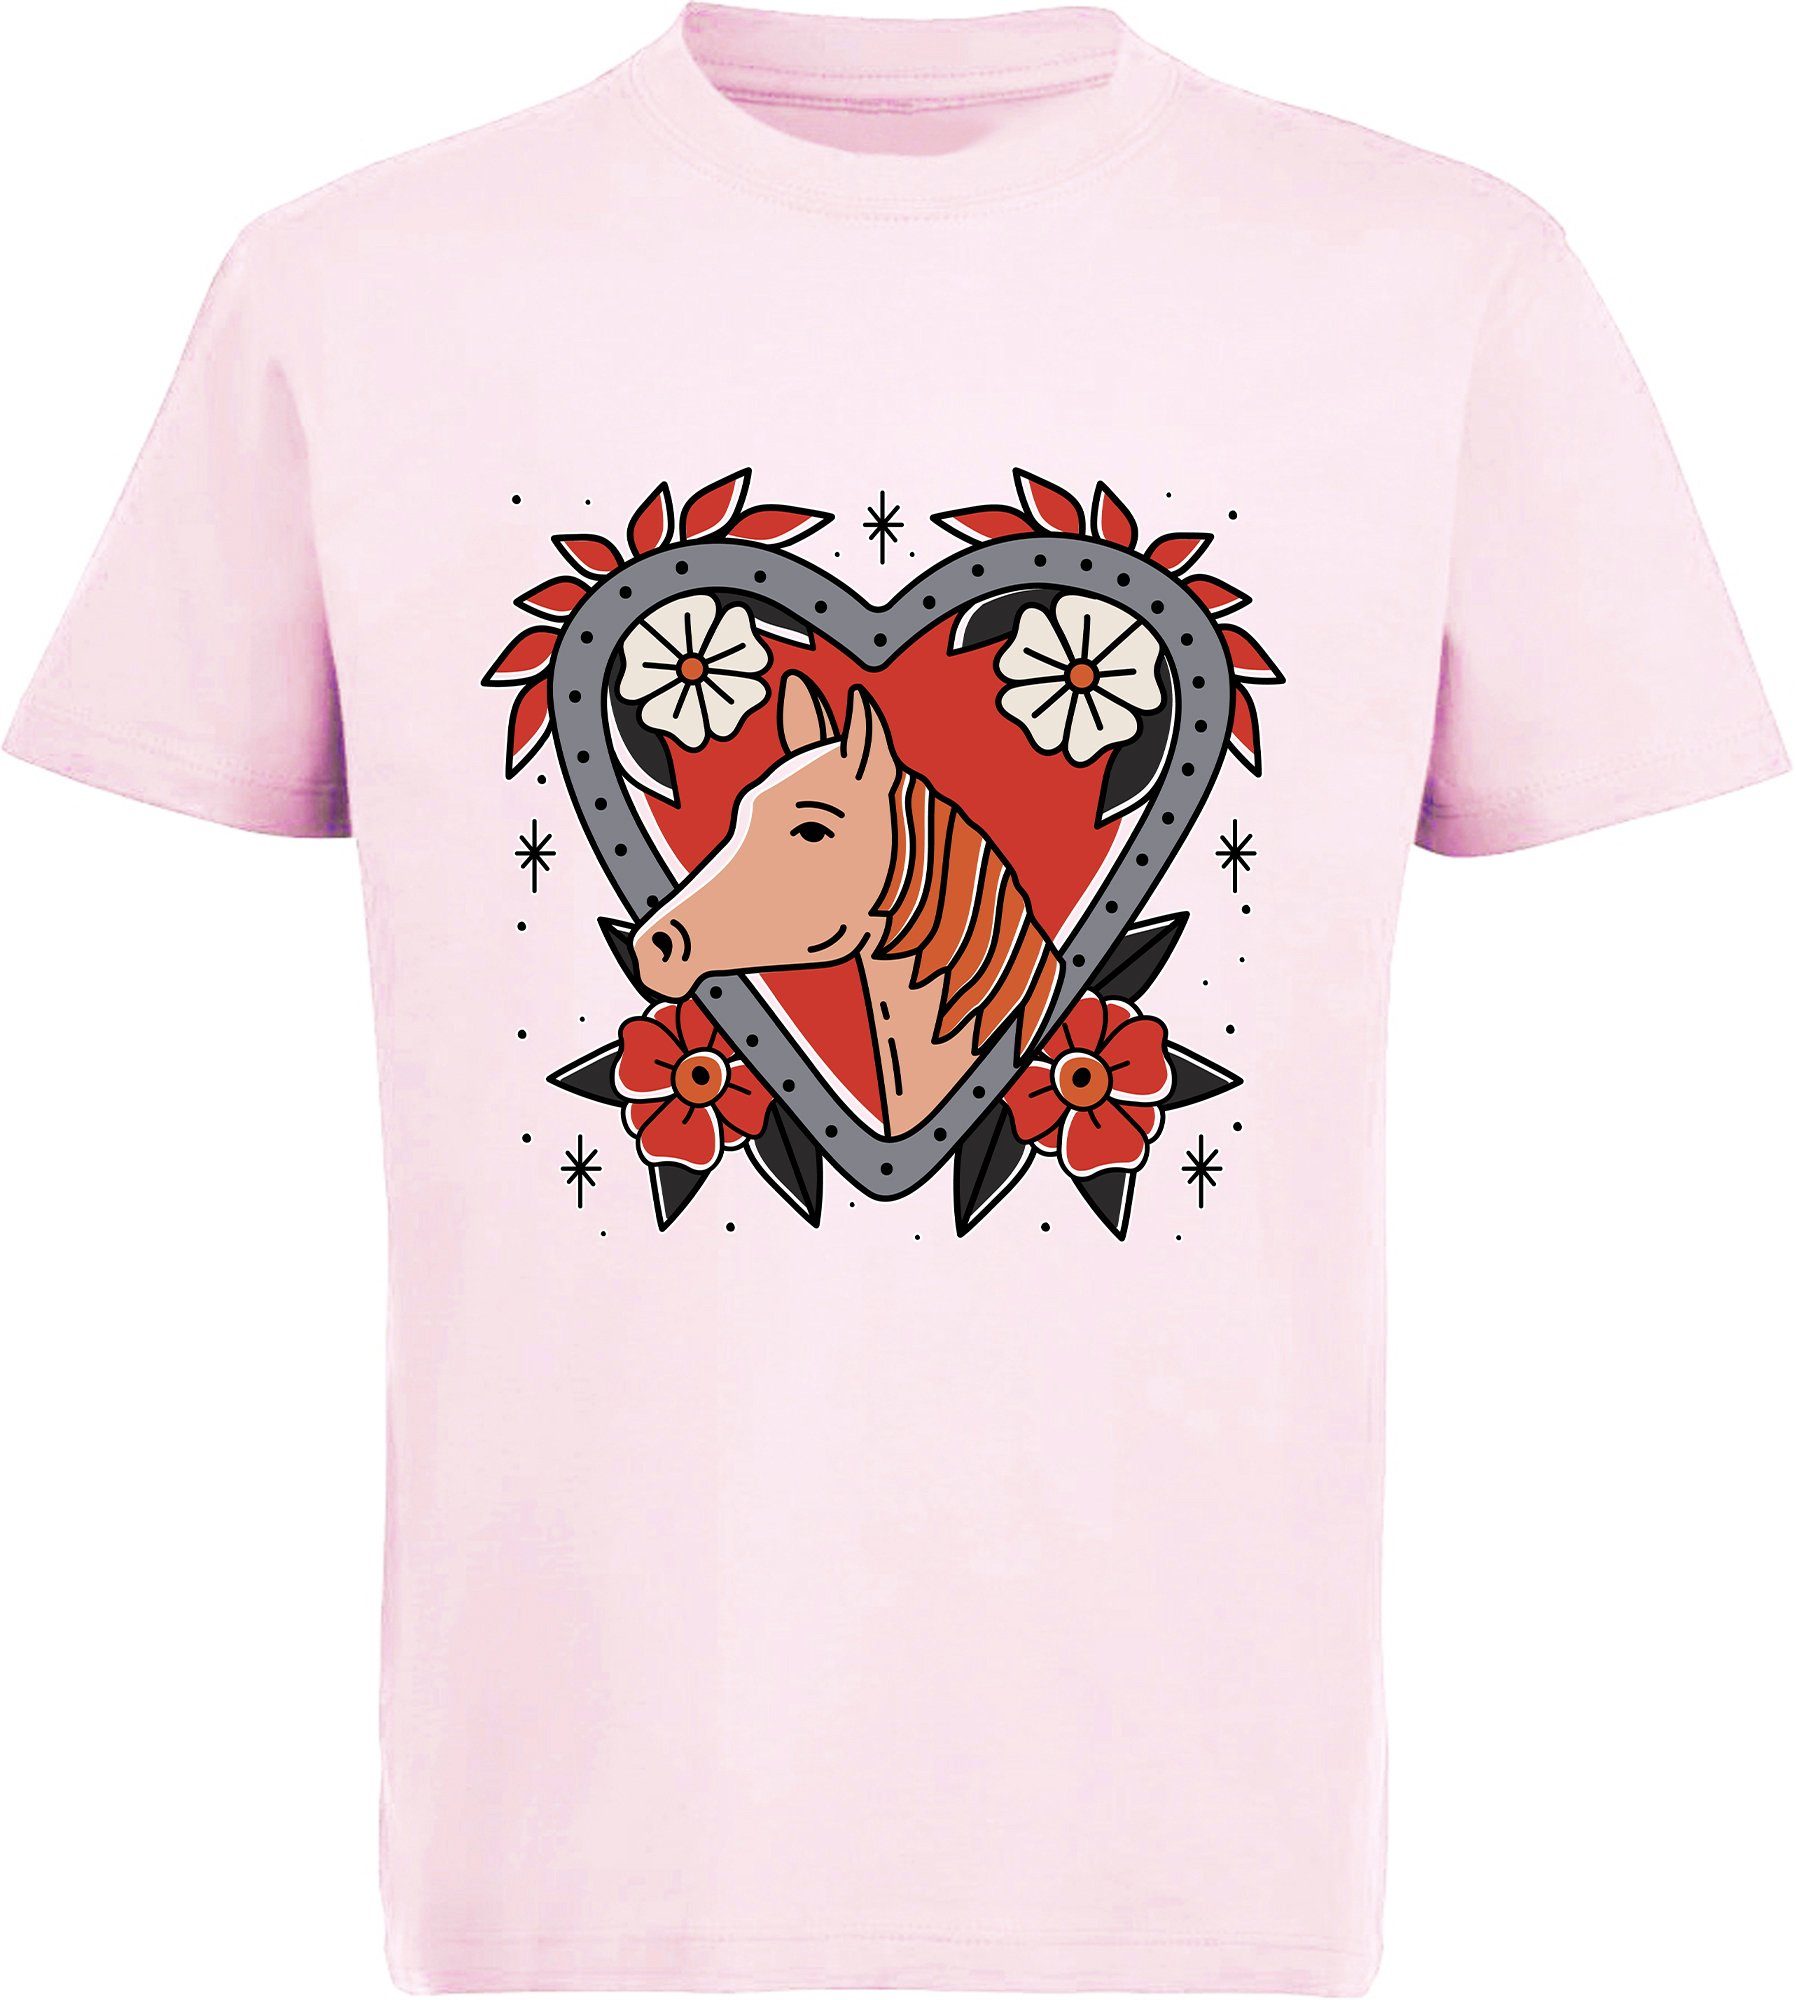 T-Shirt Aufdruck, Blumenherz MyDesign24 Baumwollshirt im bedrucktes Print-Shirt rosa, Pferd weiß, mit Mädchen i137 rot, schwarz, mit